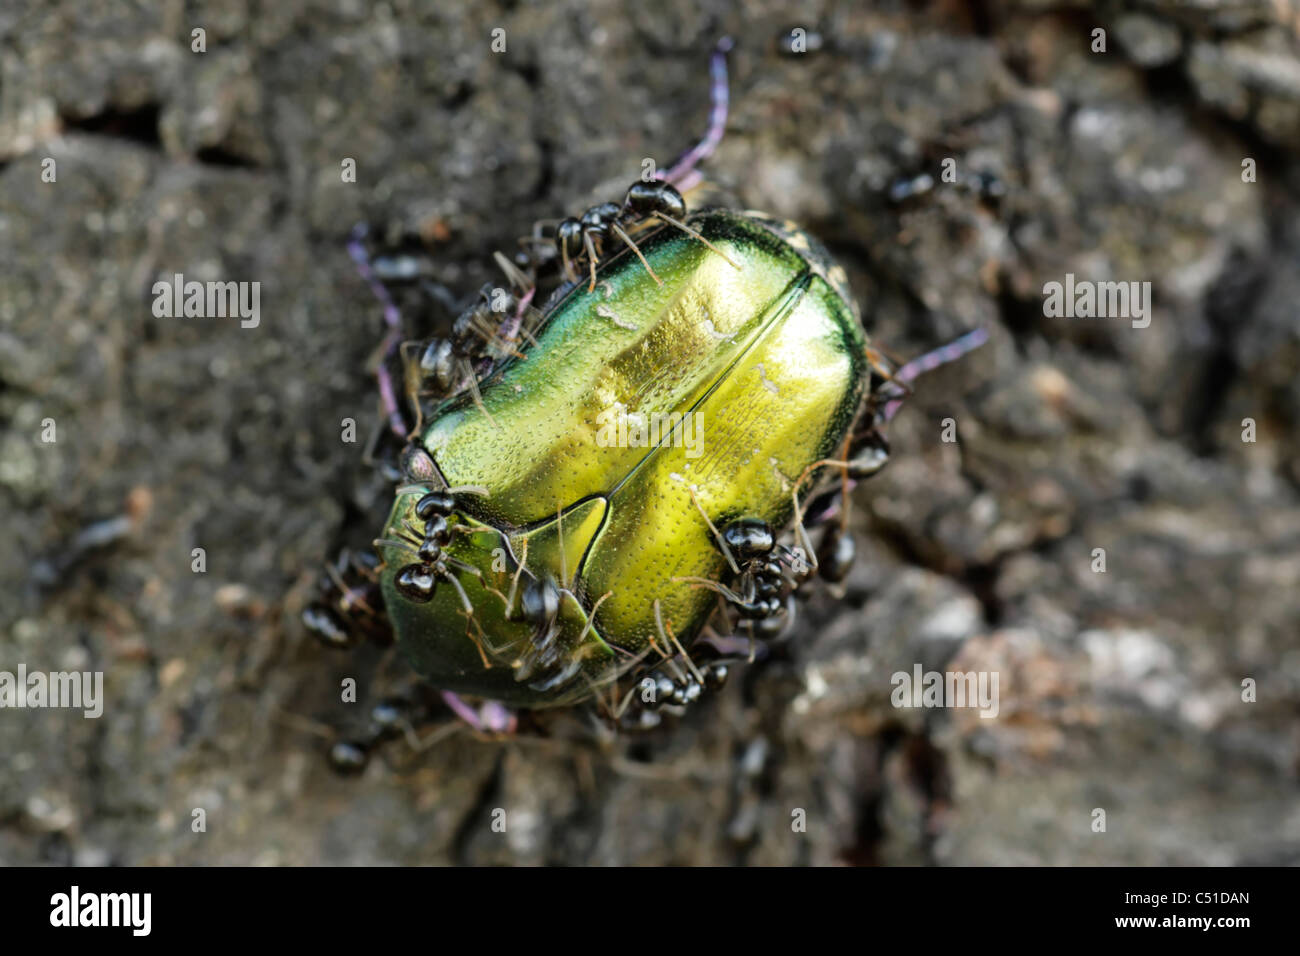 Scarabée (Cetonia cuprea) attaqué par les fourmis, les larves de ce coléoptère vivent dans des nids de fourmis Banque D'Images